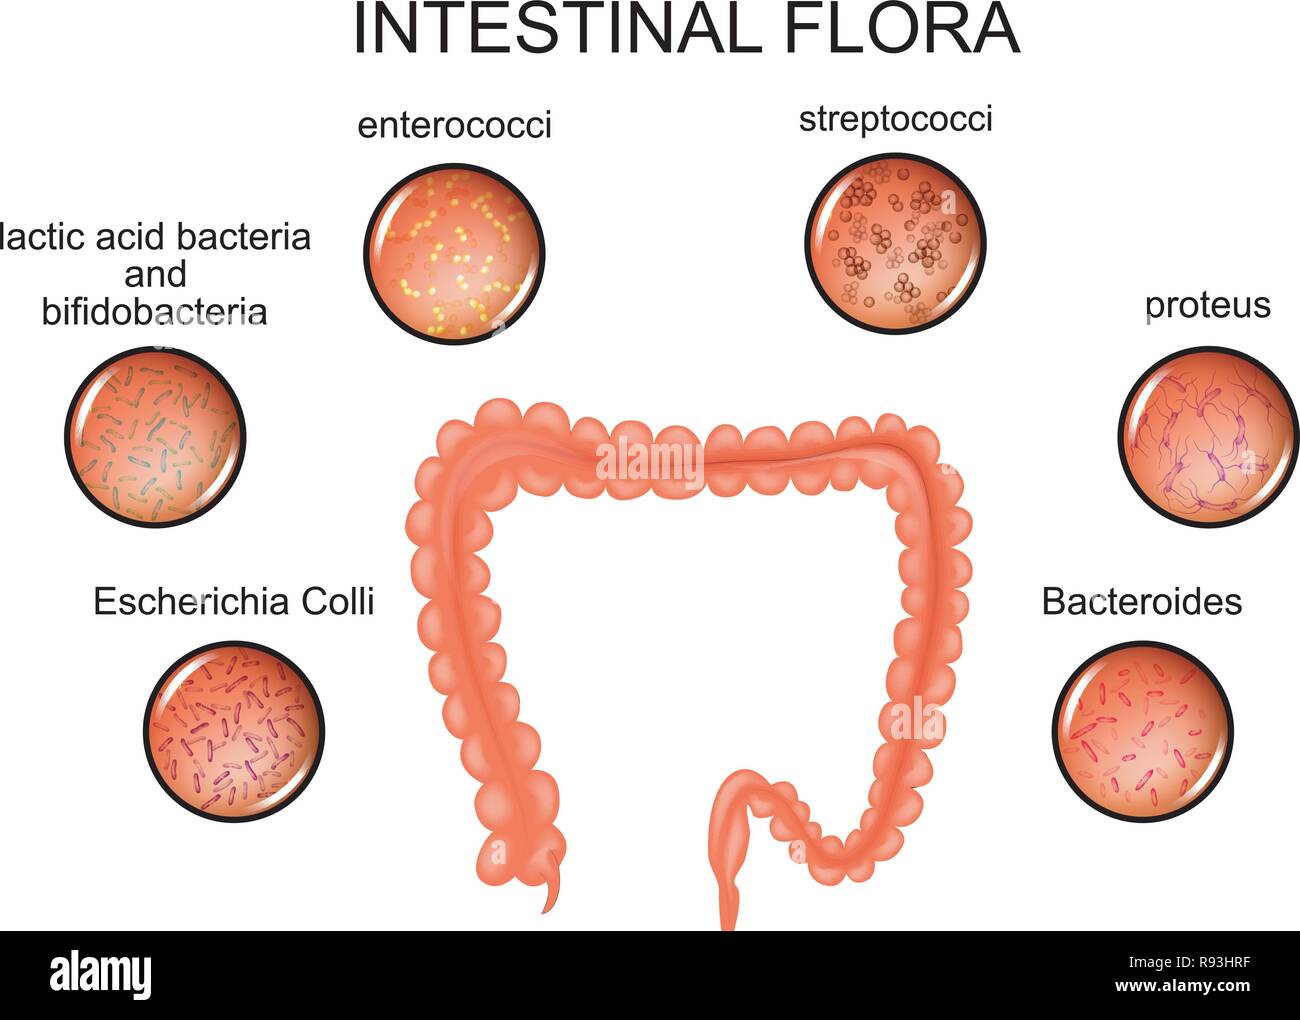 Illustrazione vettoriale dell'intestino crasso e la flora intestinale Illustrazione Vettoriale